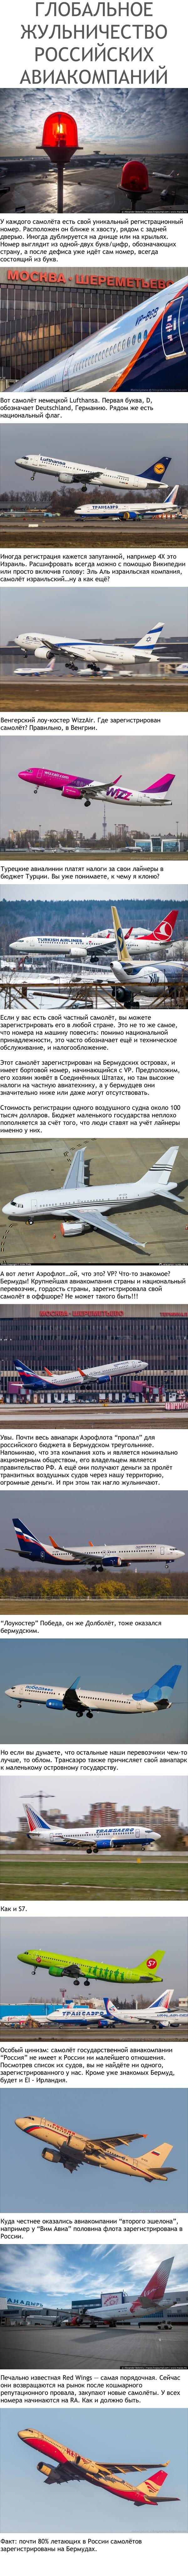 Глобальное жульничество российских авиакомпаний